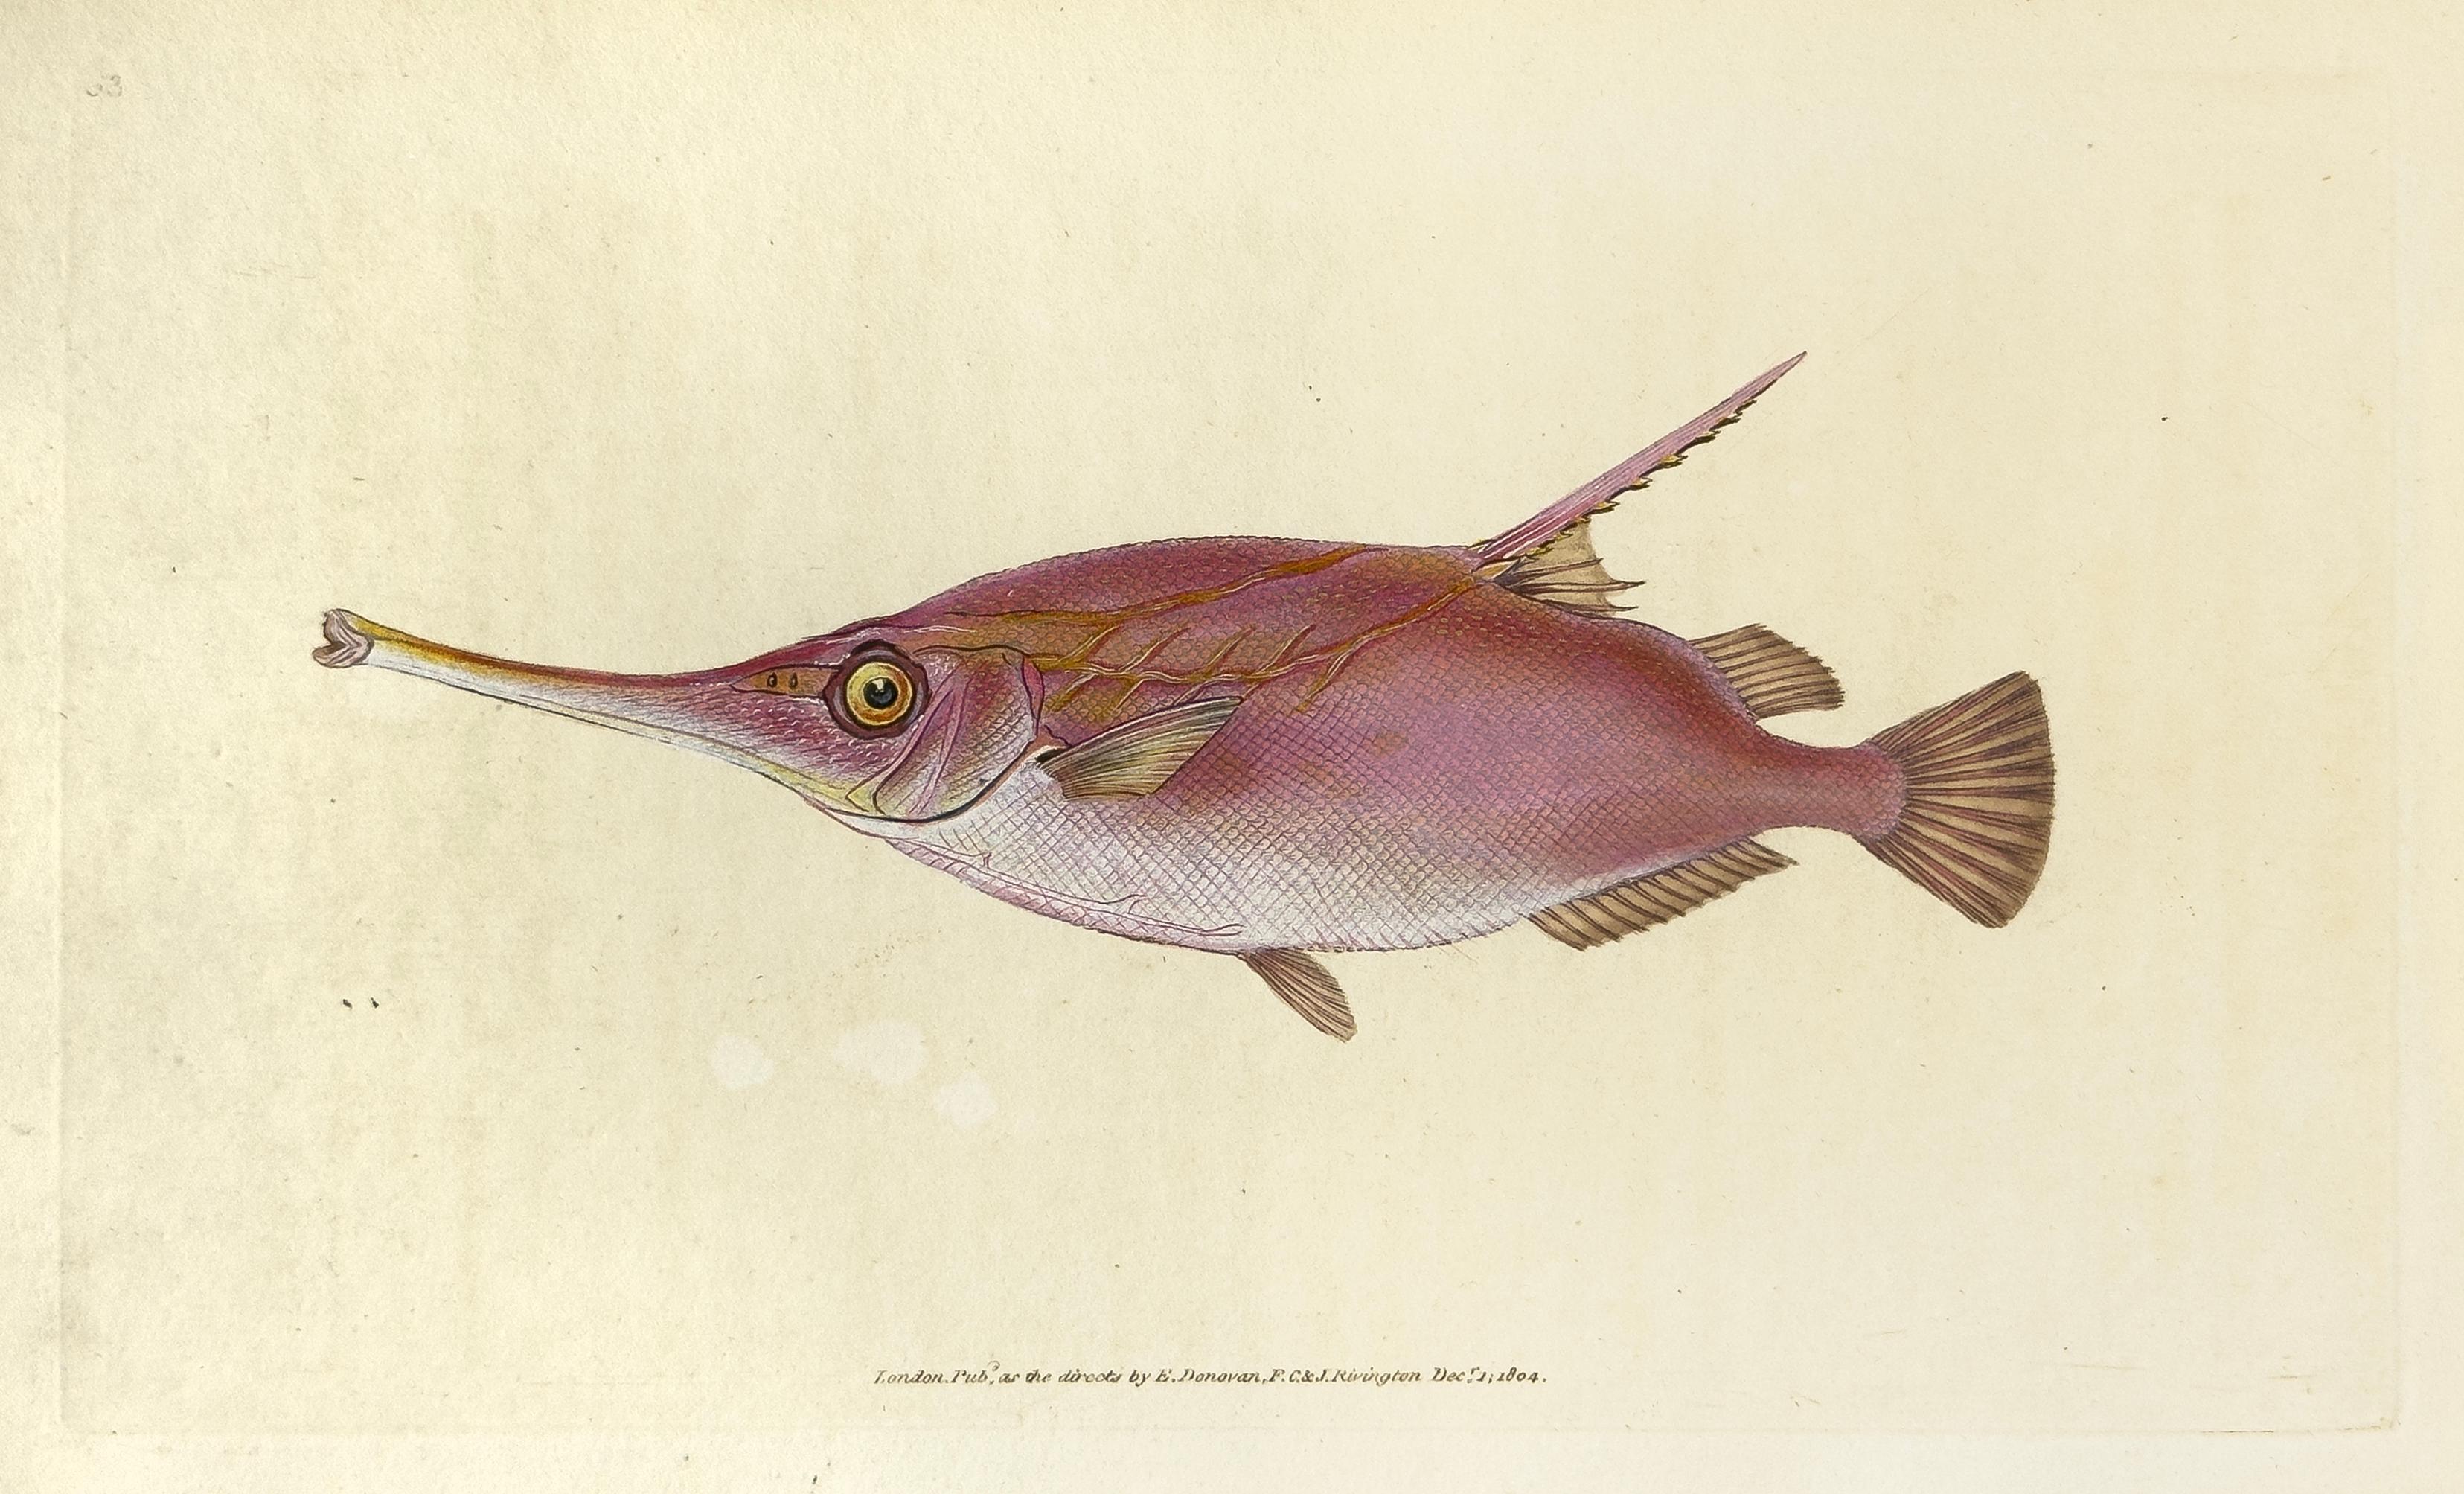 Edward Donovan Animal Print – 63: Centriscus Muschelax, Messer oder Trompetenfisch Fisch